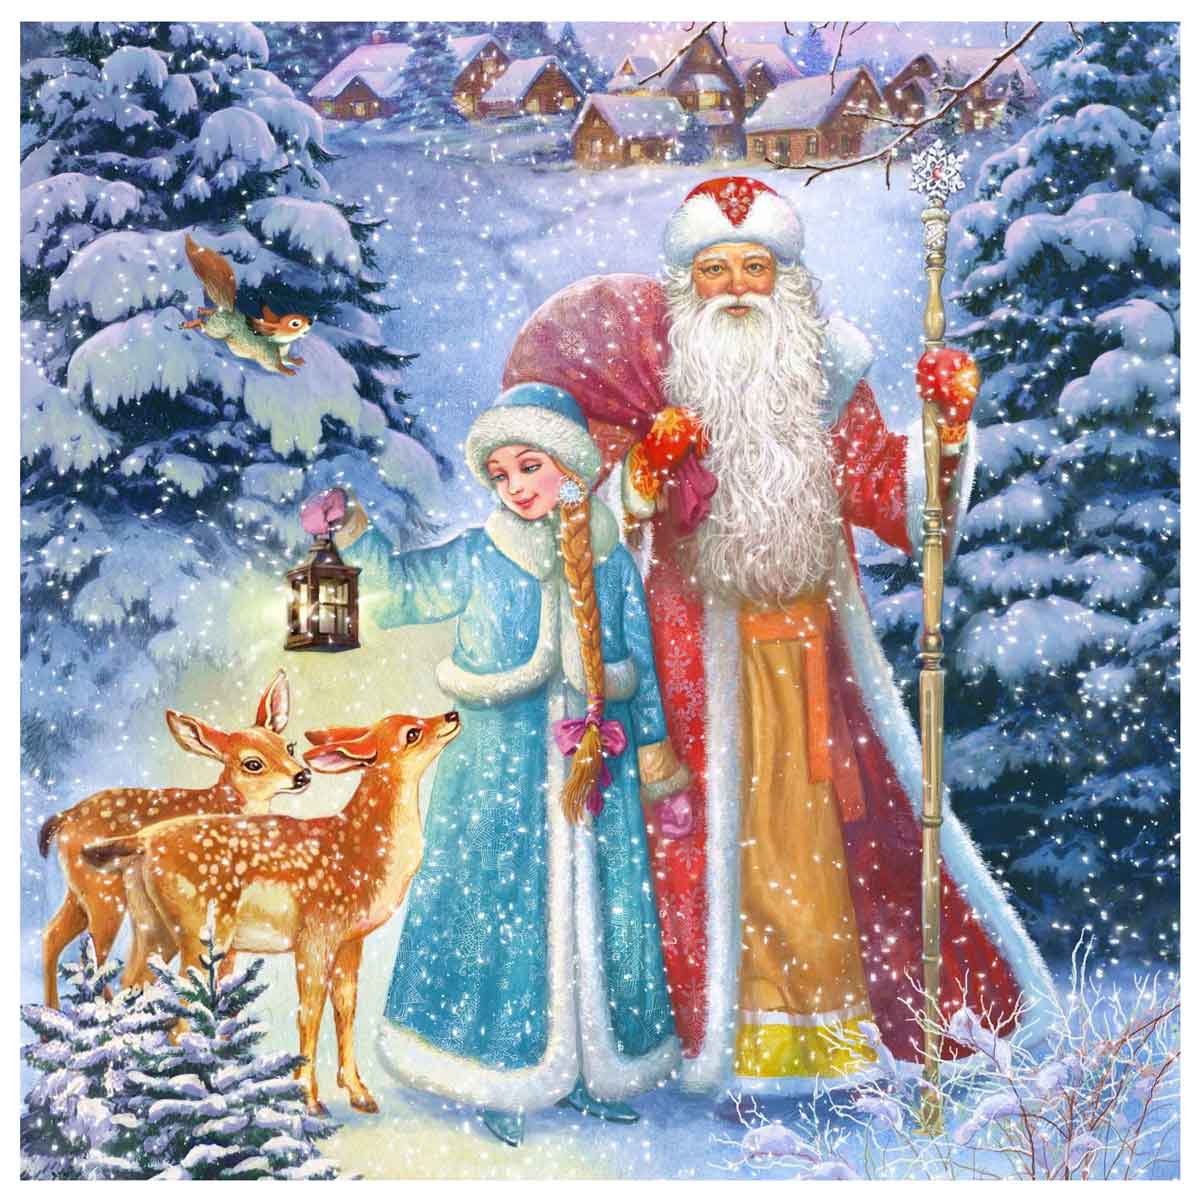 Дед Мороз и Снегурочка - купить почтовую открытку